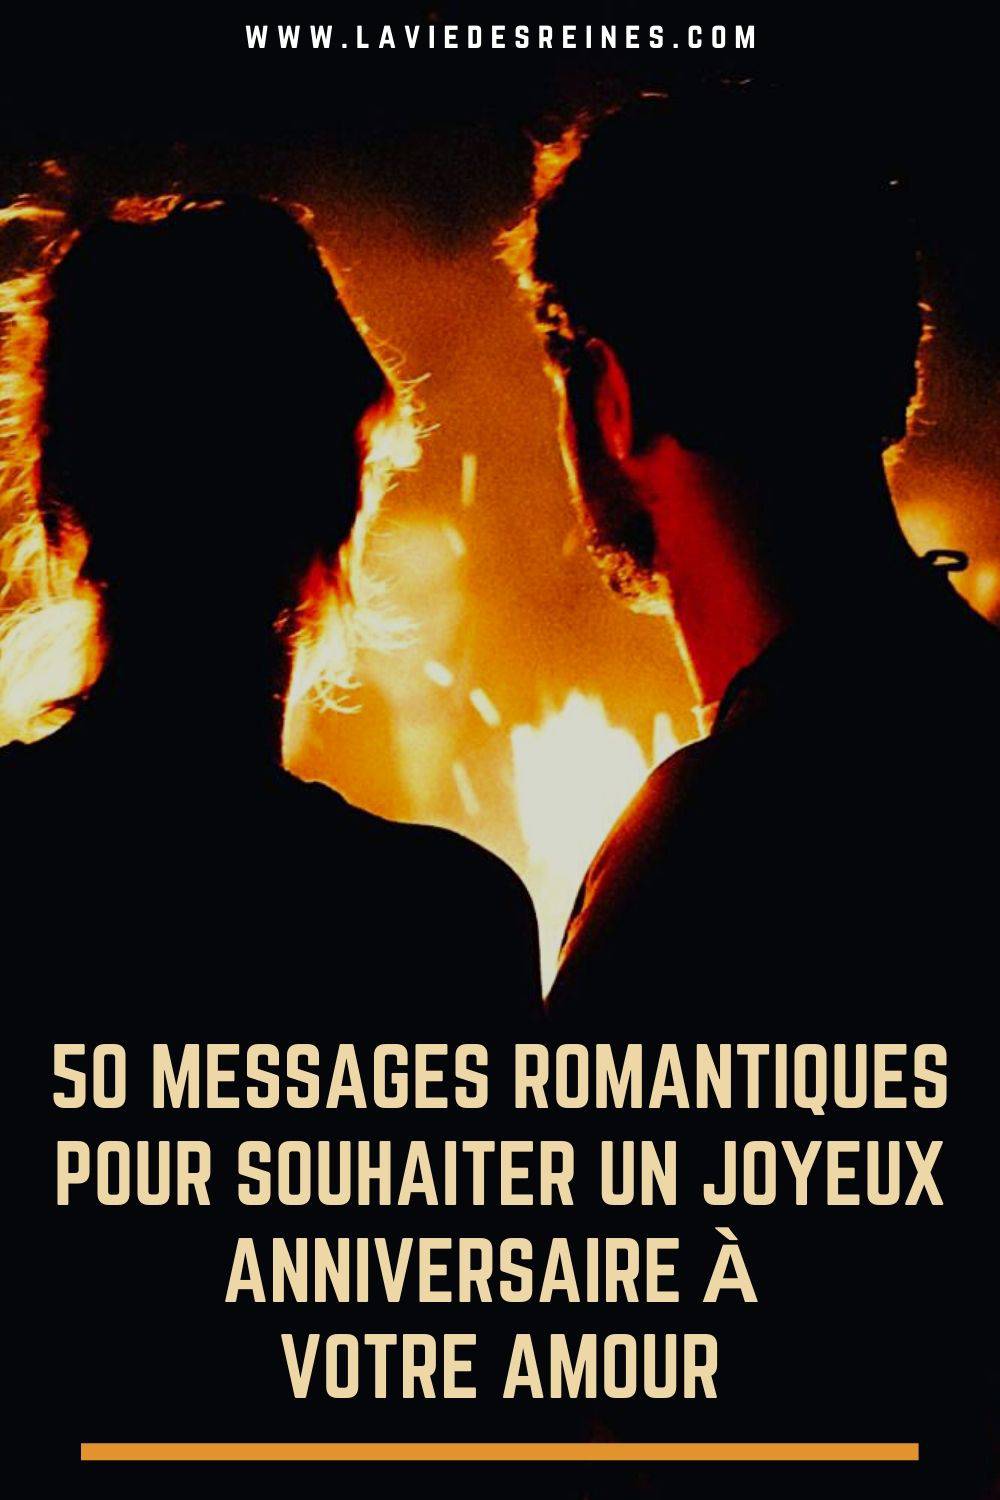 50 Messages Romantiques Pour Souhaiter Un Joyeux Anniversaire A Votre Amour